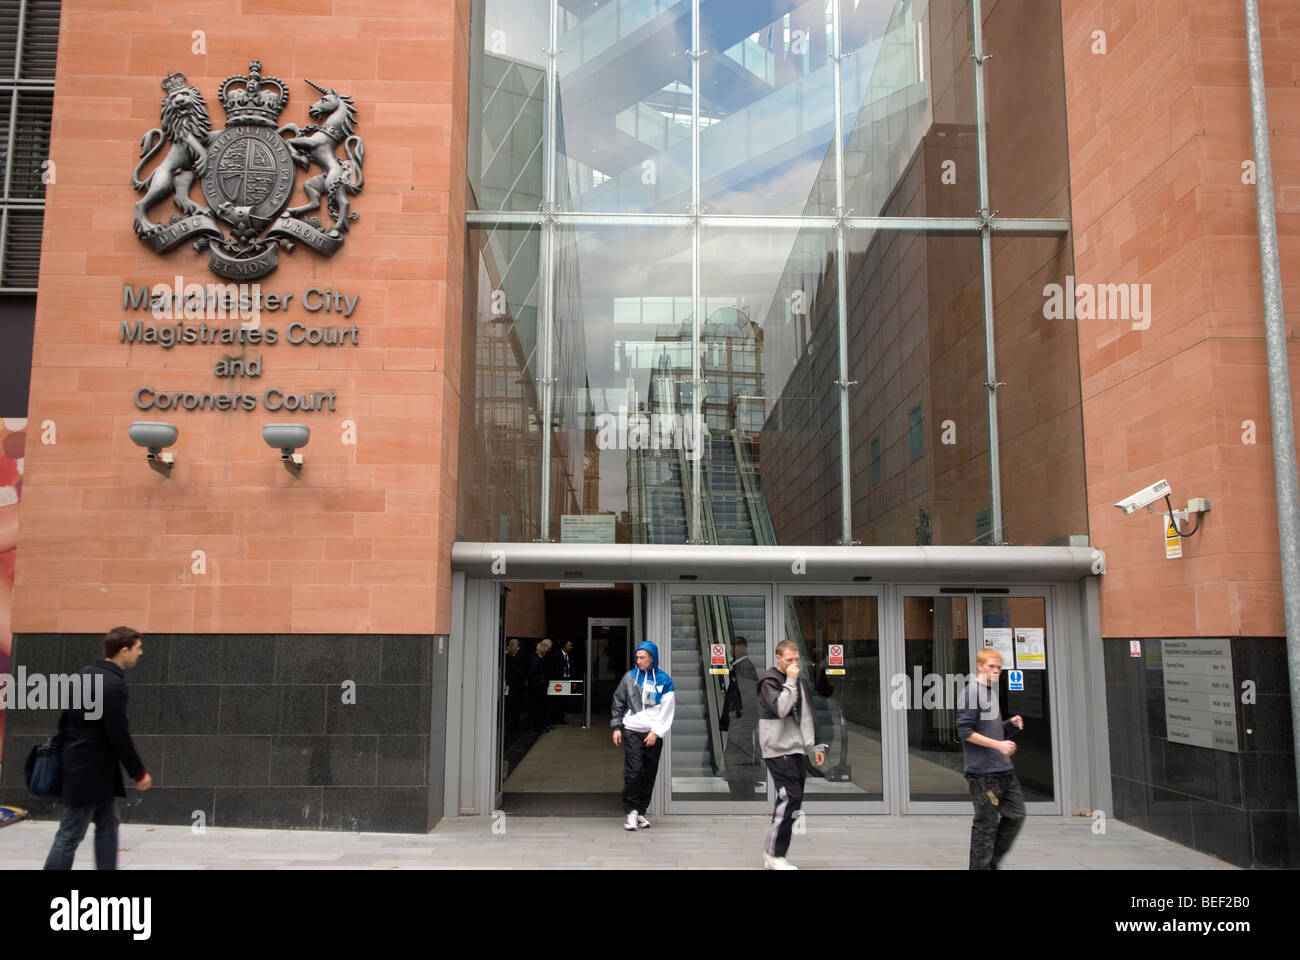 Manchester City magistrati e dai coroner corte, Manchester, Regno Unito. Foto Stock